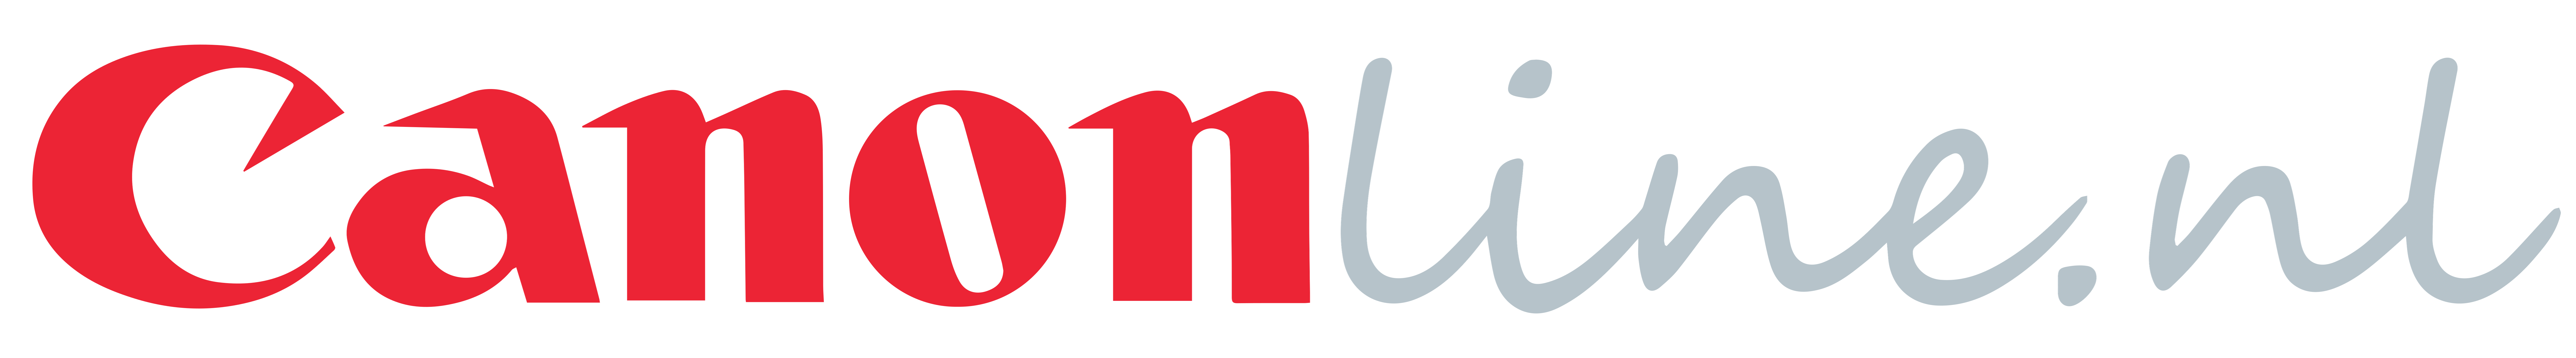 De transformatie van Canonline.nl featured logo